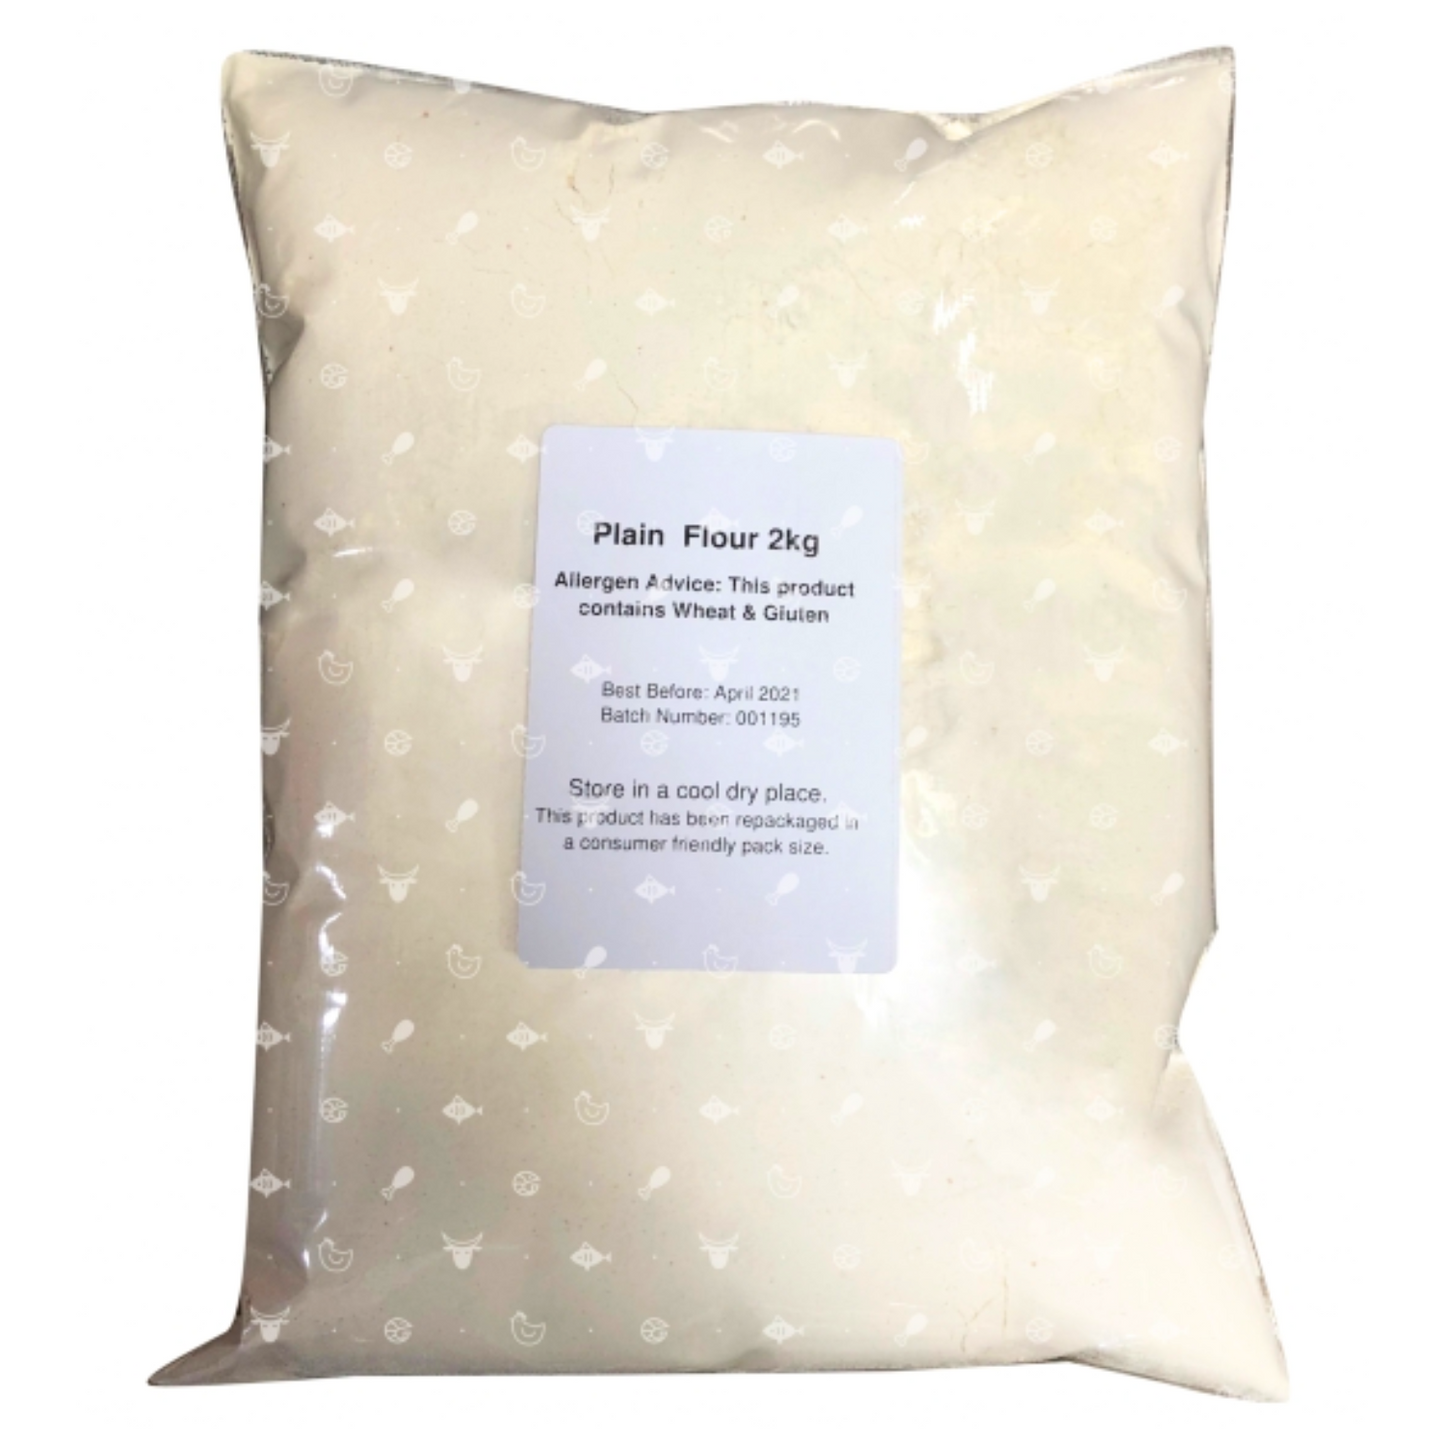 Plain Flour 2kg